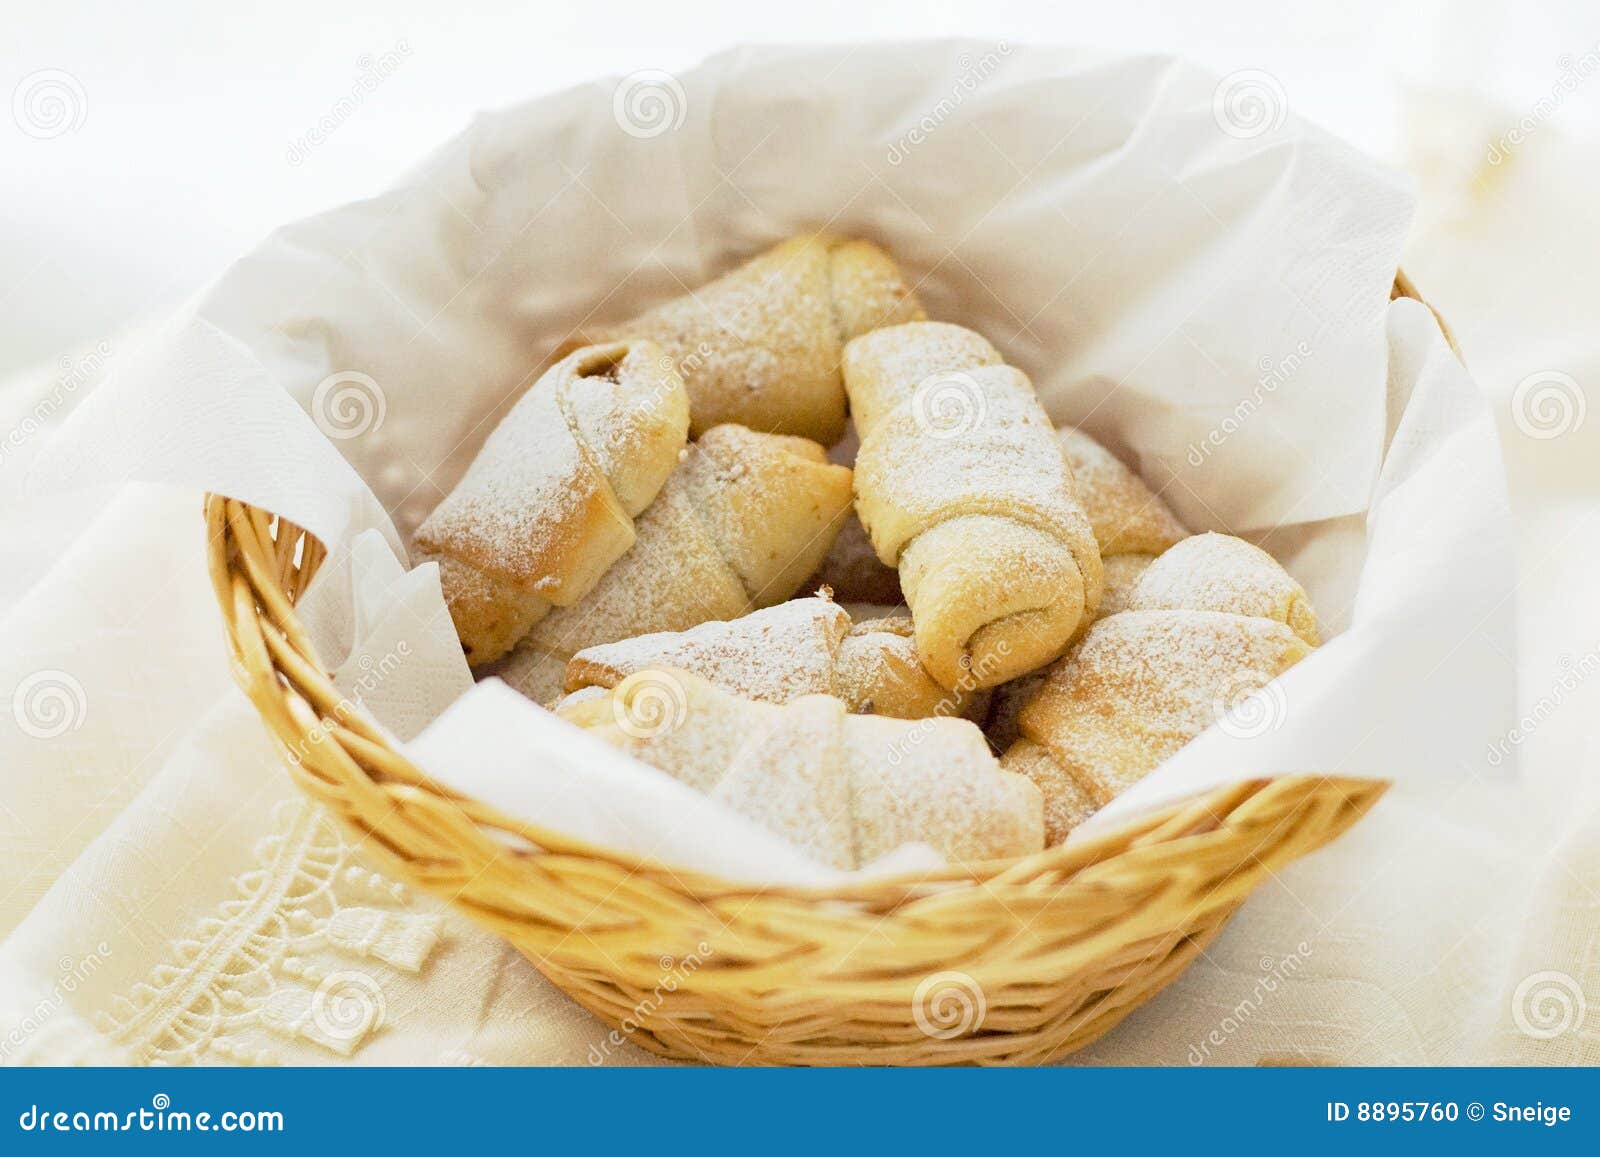 γλυκό ρόλων ψωμιού. καλαθιών ψωμιού στενό γλυκό ζάχαρης εικόνας ψεκασμένο ρόλοι που υφαίνεται επάνω